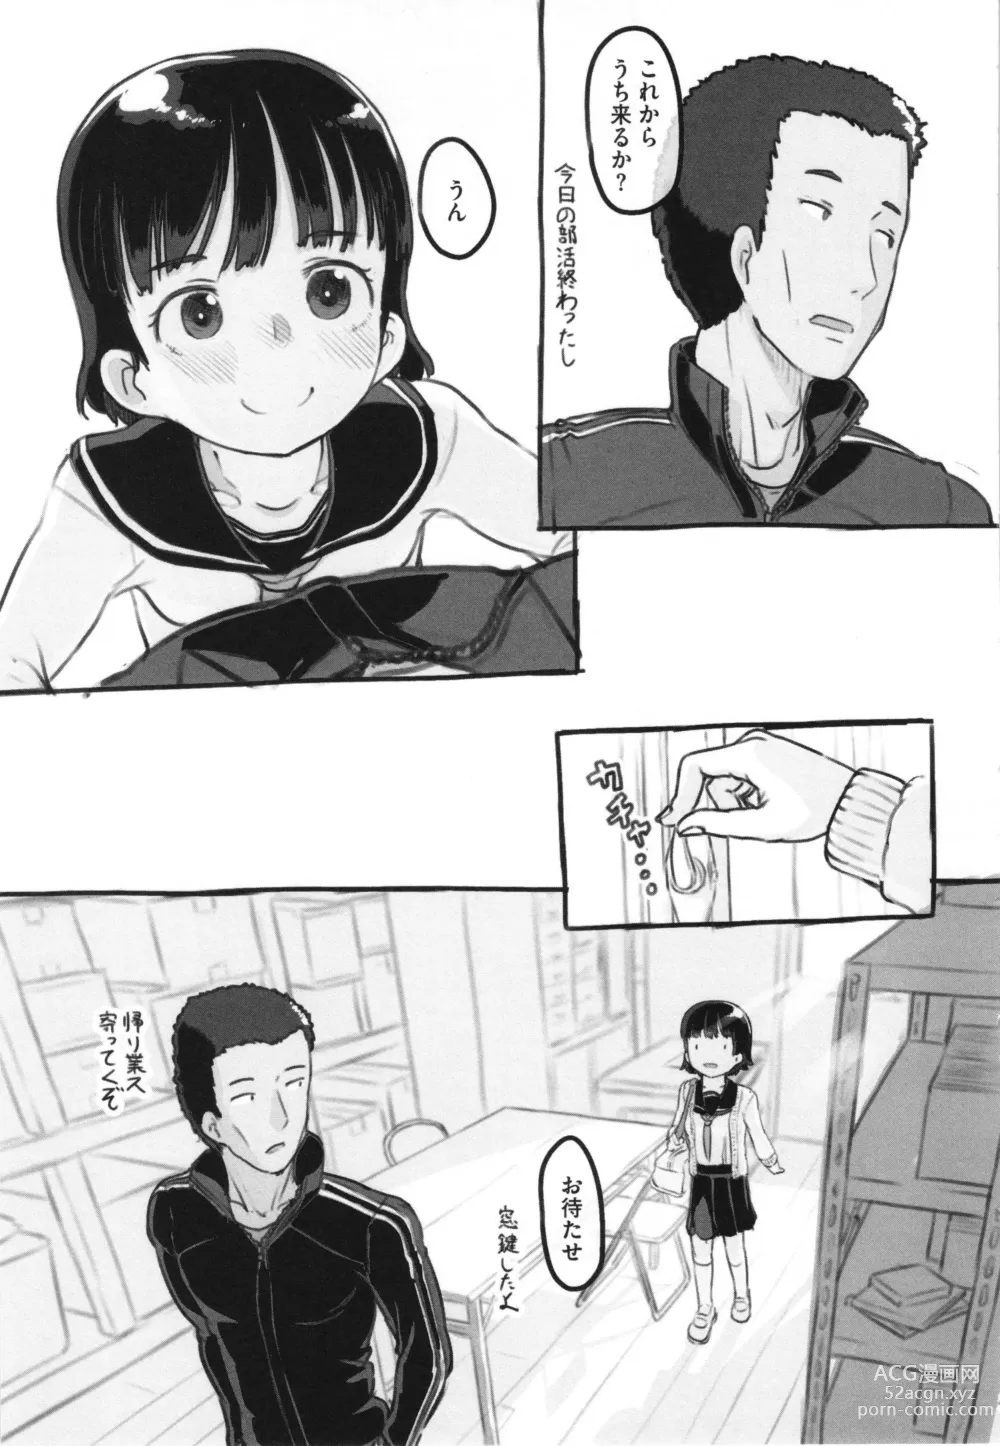 Page 220 of manga Kanojo wa Mada Kaette Inai